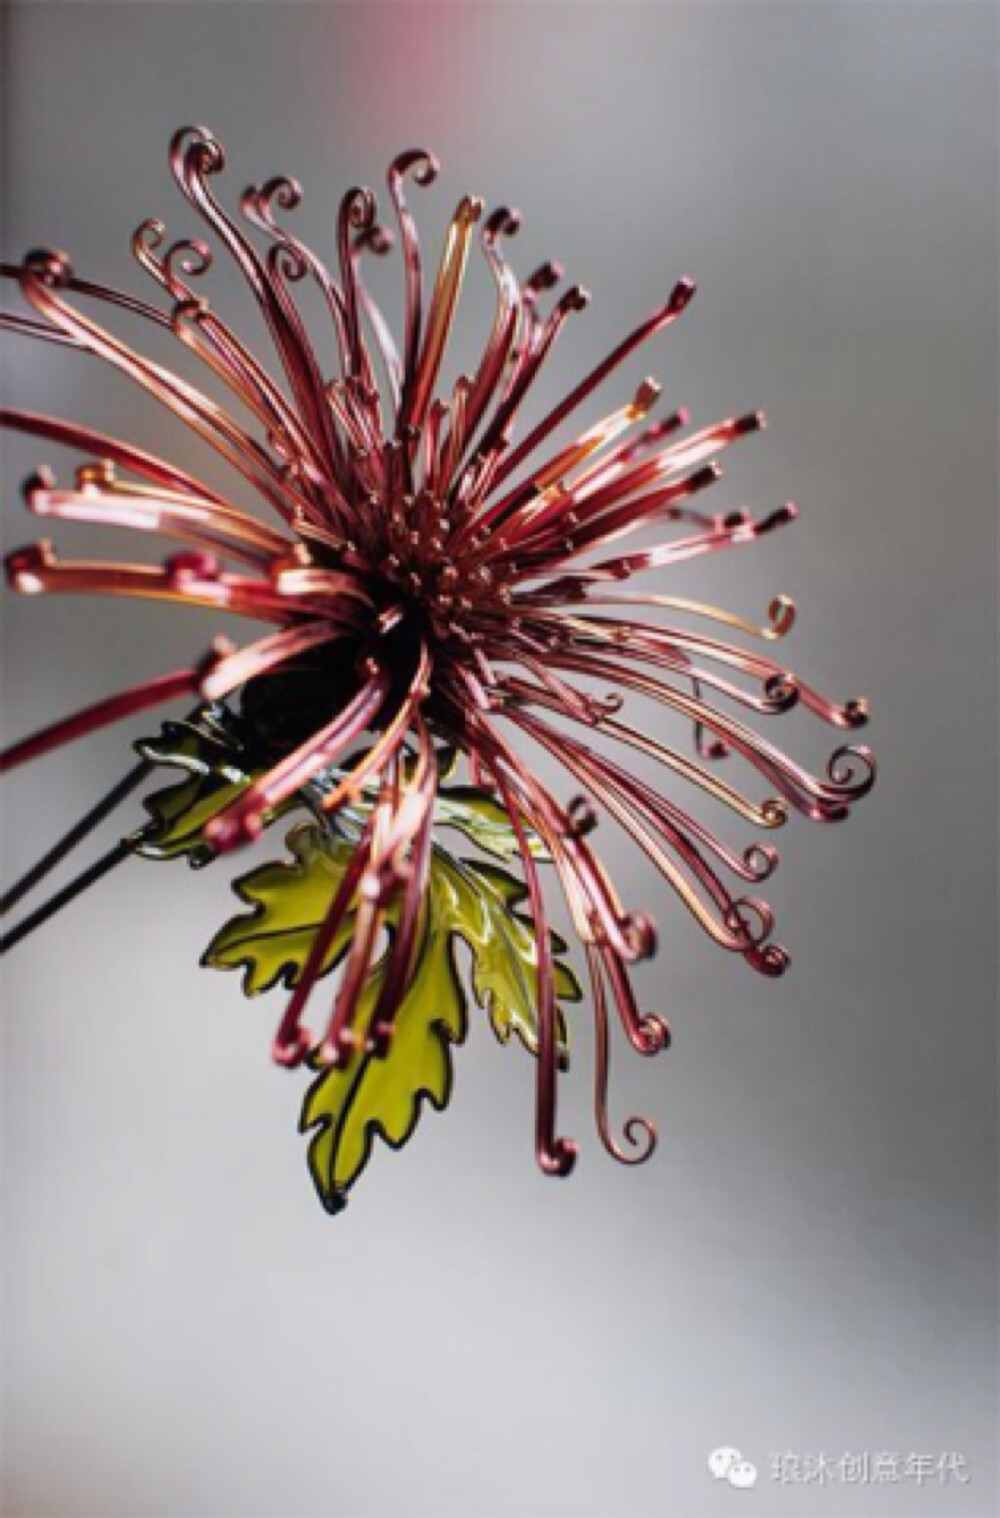 『发簪，美到让人无法呼吸』 日本艺术家Sakae却用他的神乎其技借来了自然造物的韵味。无论是桔梗、牡丹、樱花或者翩然起舞的蝴蝶，都是细节丰富、栩栩如生，薄琉璃般的材质发出着淡淡珠光，让这些花簪更显娇美。现在就一起来细细欣赏下吧！4）